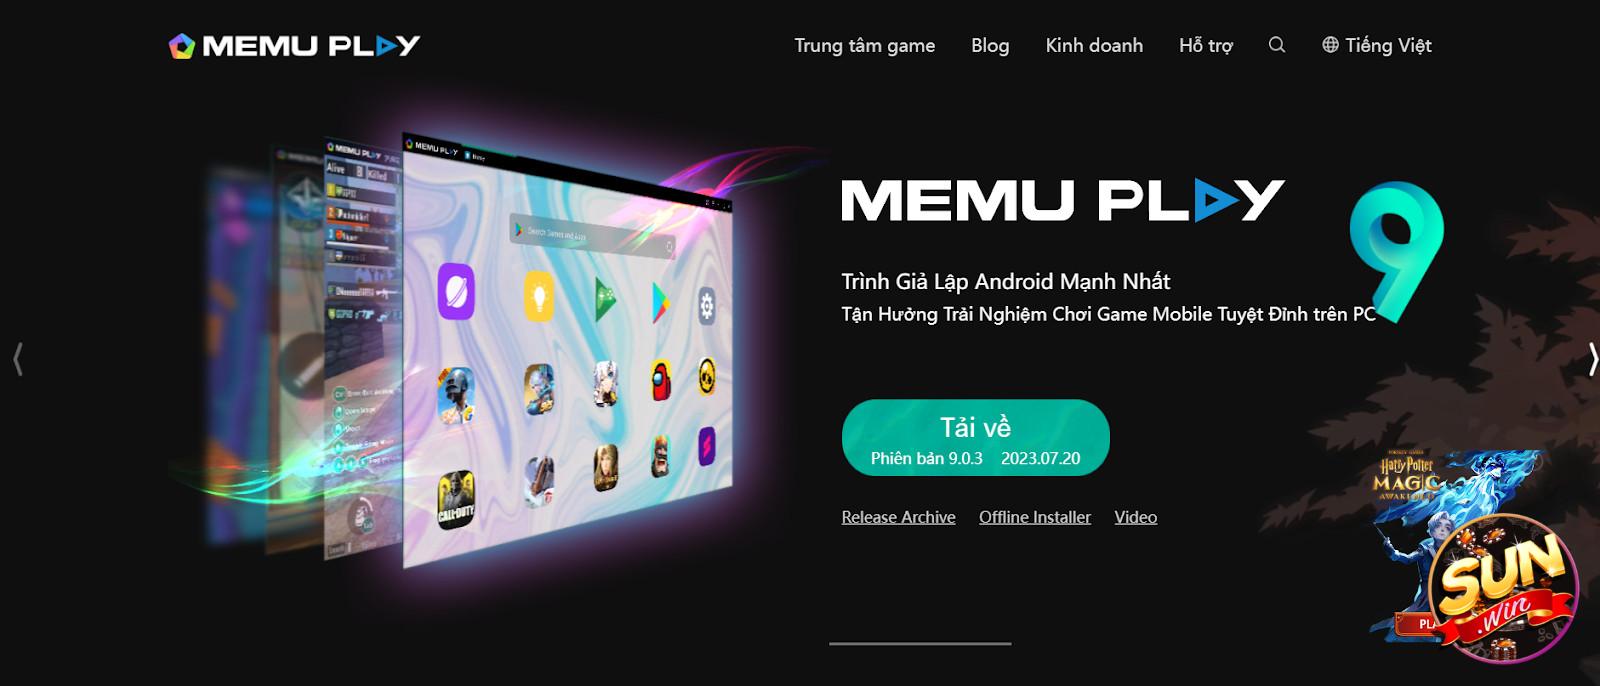 Truy cập vào trang chủ của MEmu App Player và tiến hành tải phần mềm về thiết bị